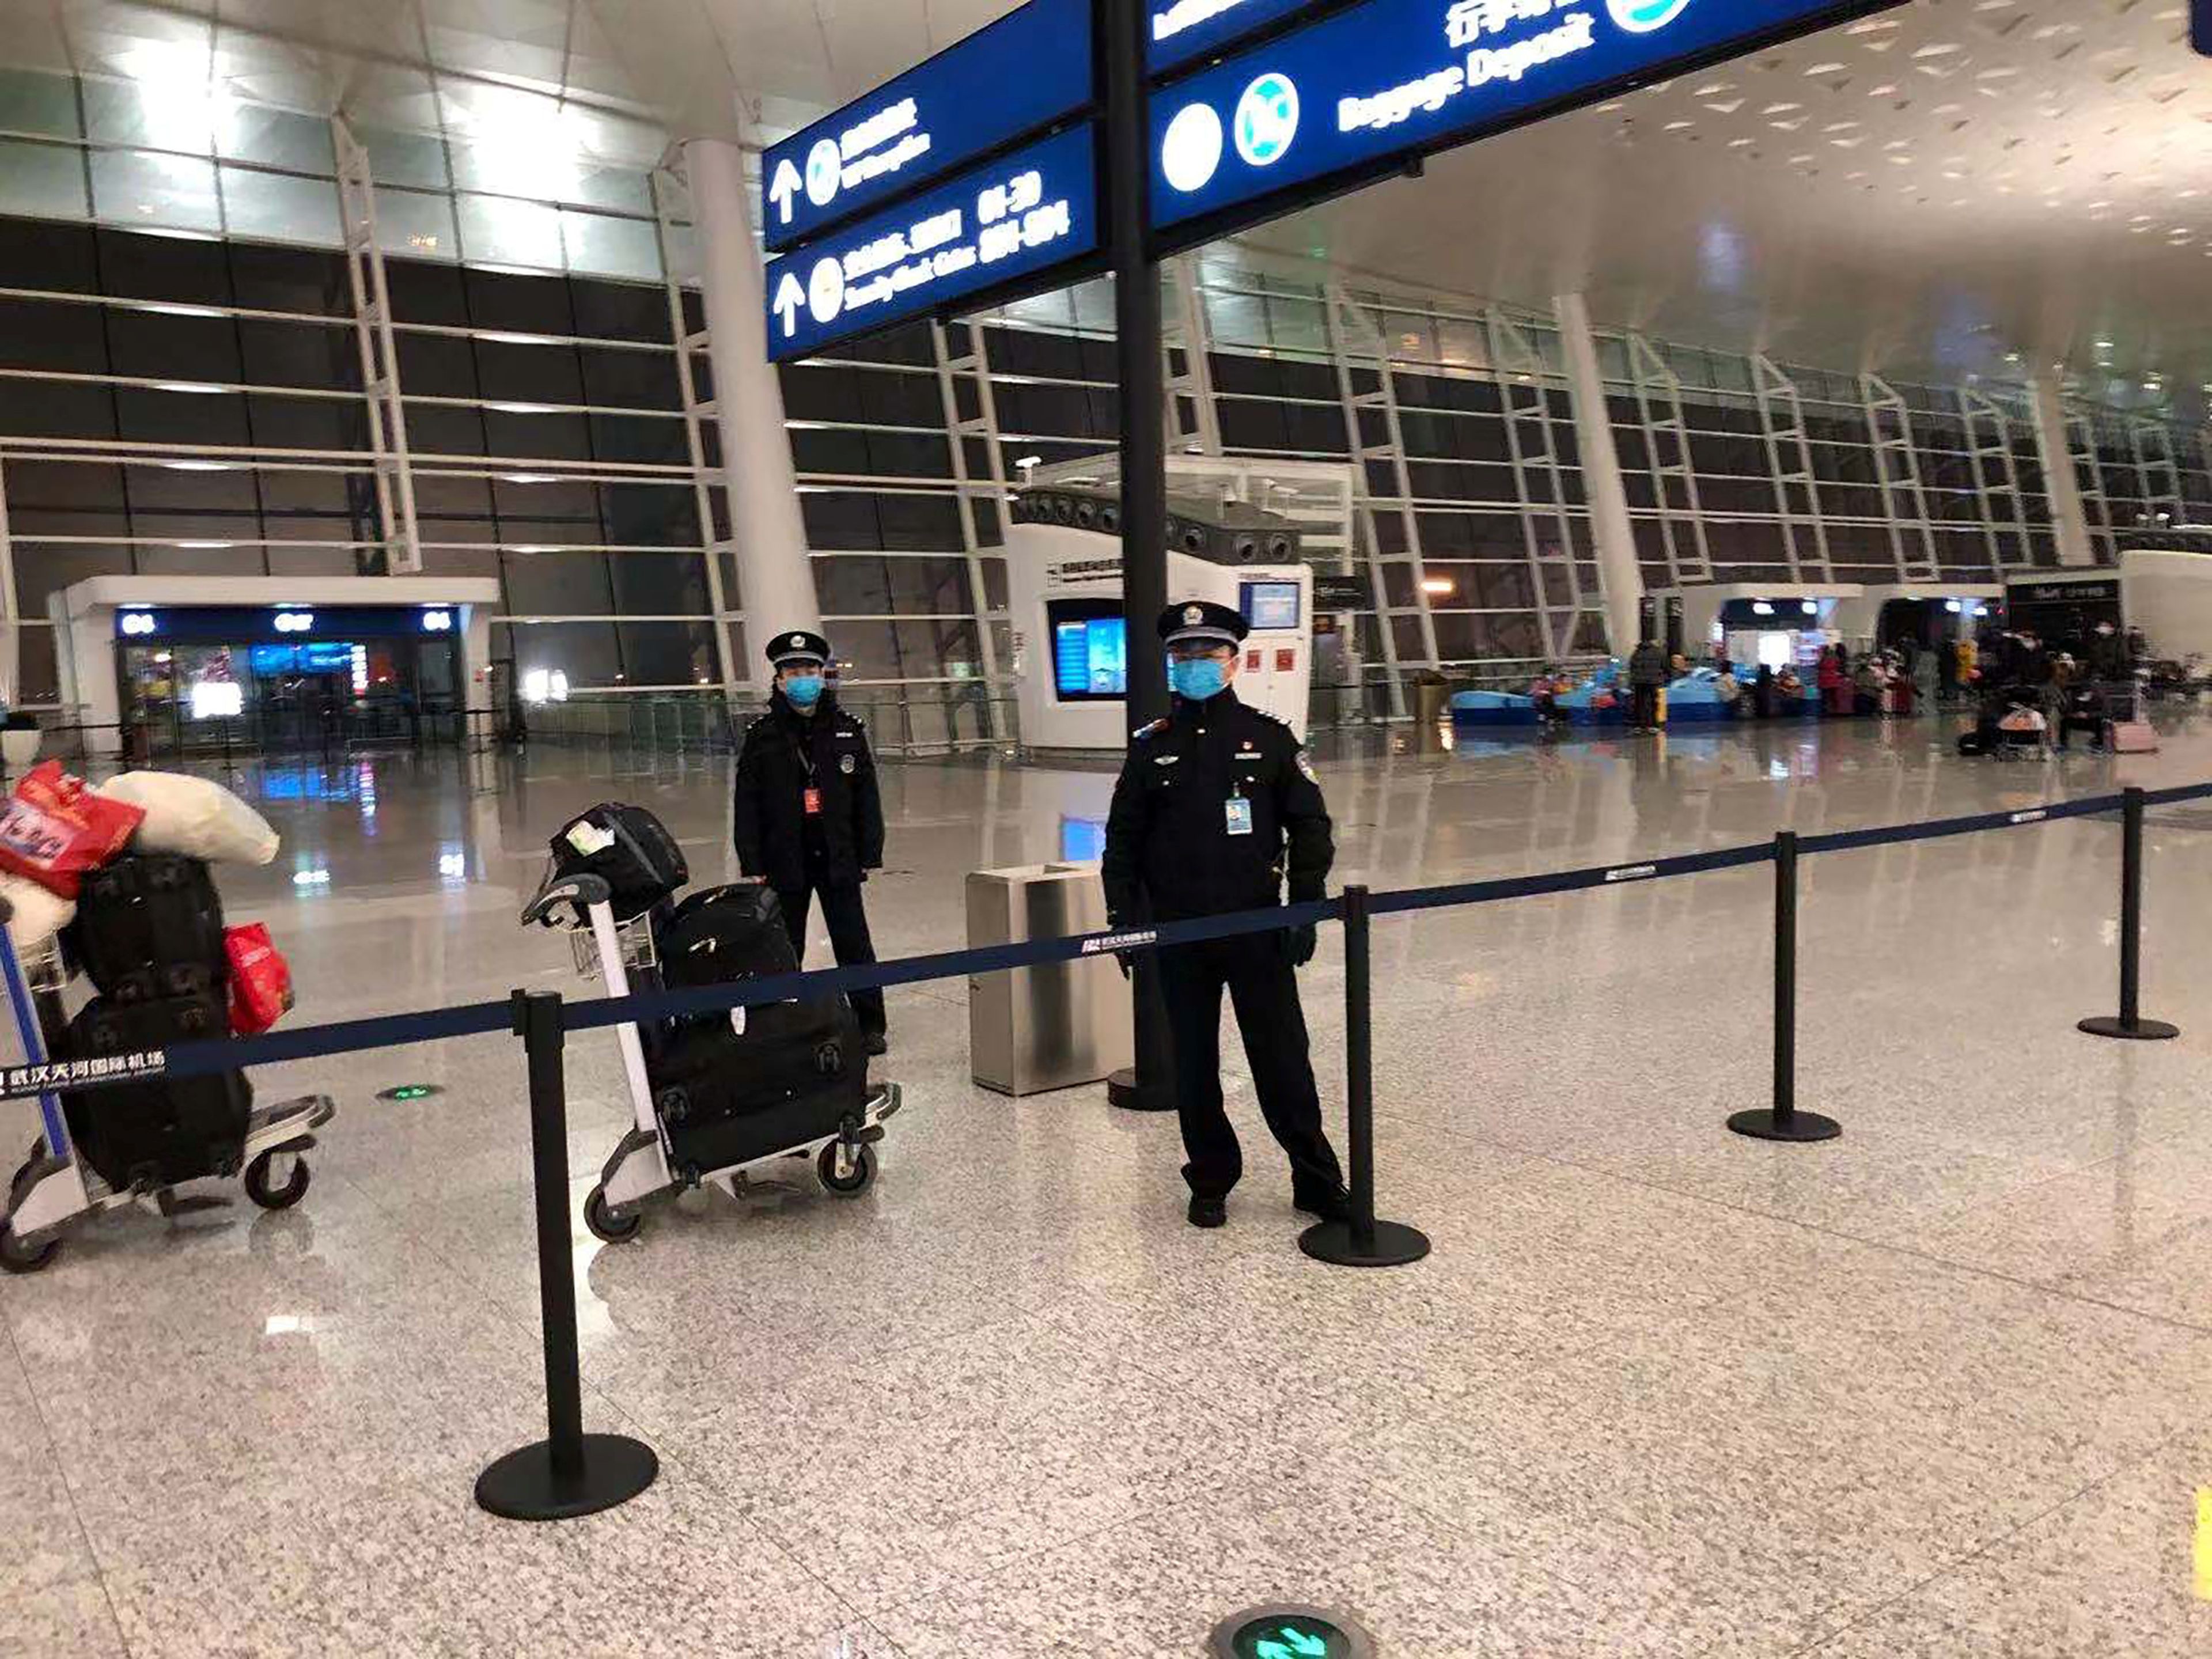 Oficial de seguridad en el aeropuerto internacional de Wuhan Tianhe en Wuhan, China, el 7 de febrero de 2020.